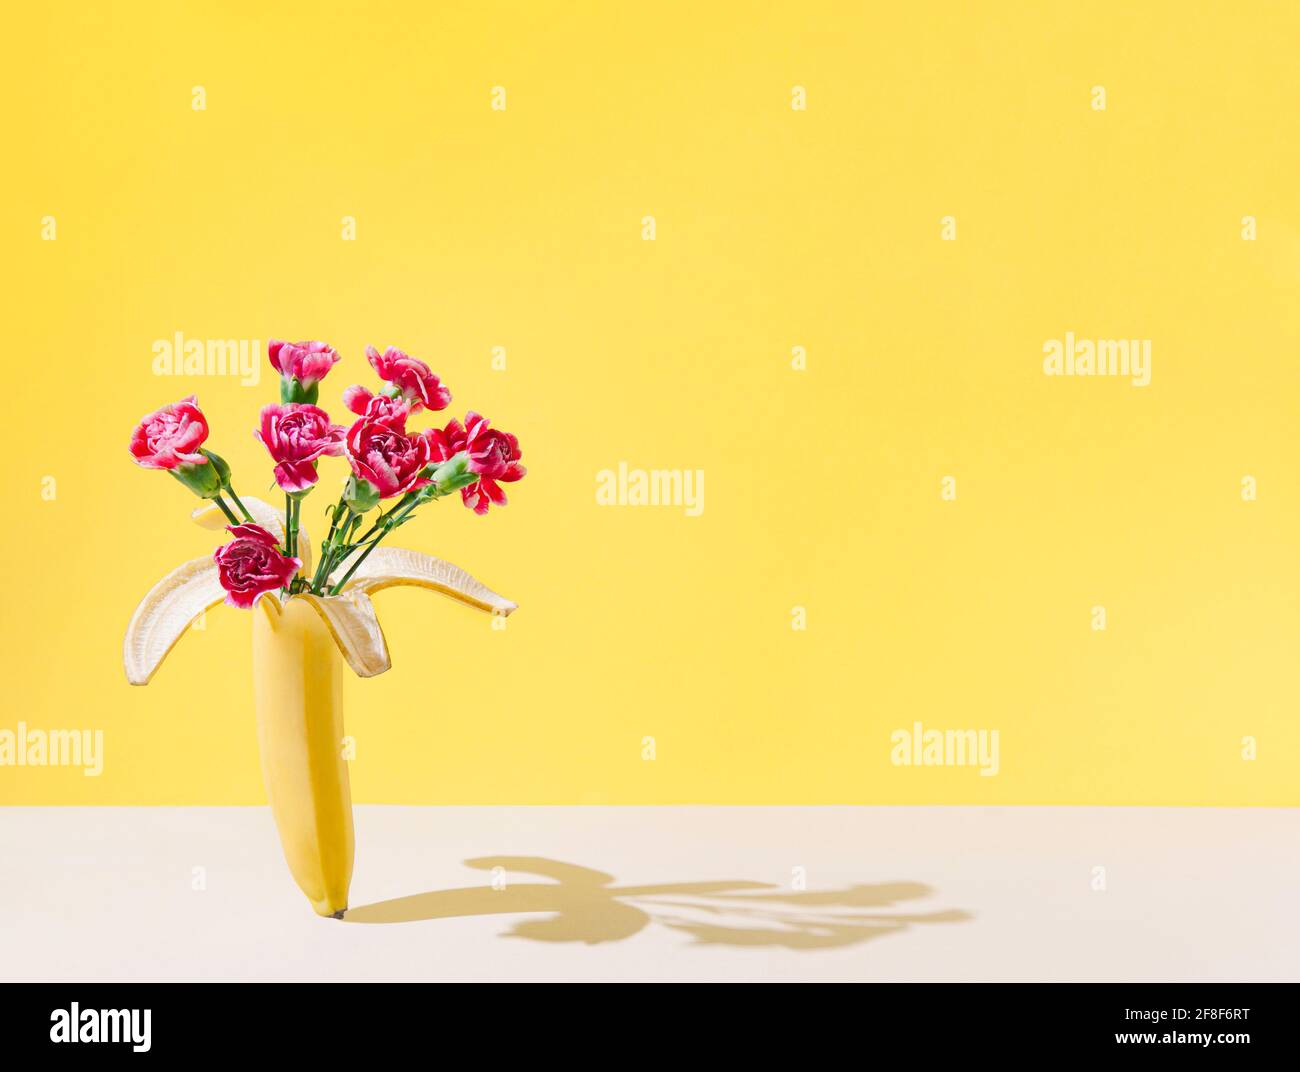 Aménagement créatif avec bouquet de fleurs naturelles et de fruits à la banane sur fond de sable pastel. Thème cadeau femme. Banque D'Images